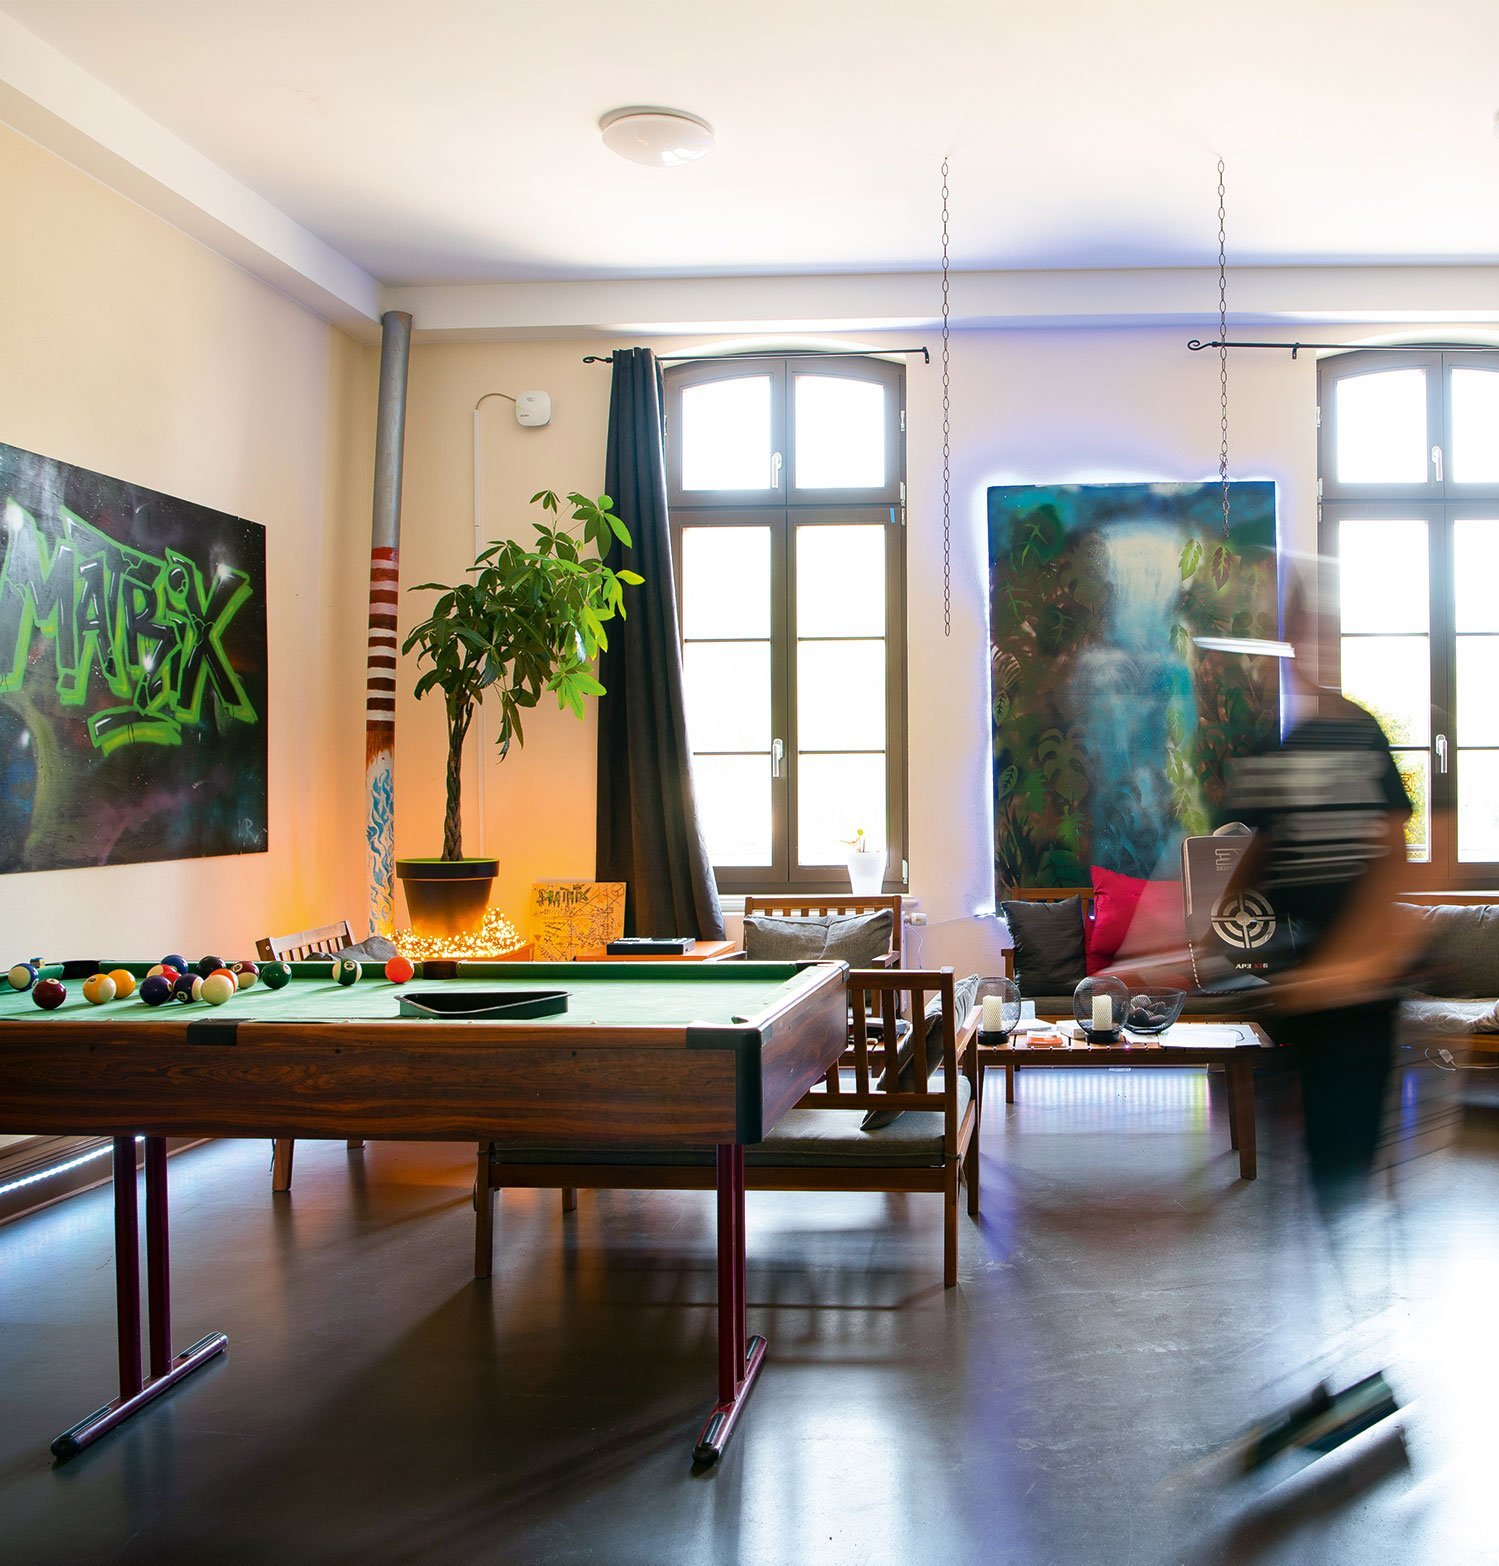 Raum mit Billardtisch, Pflanze, Sitzecke und Poster an Wand.